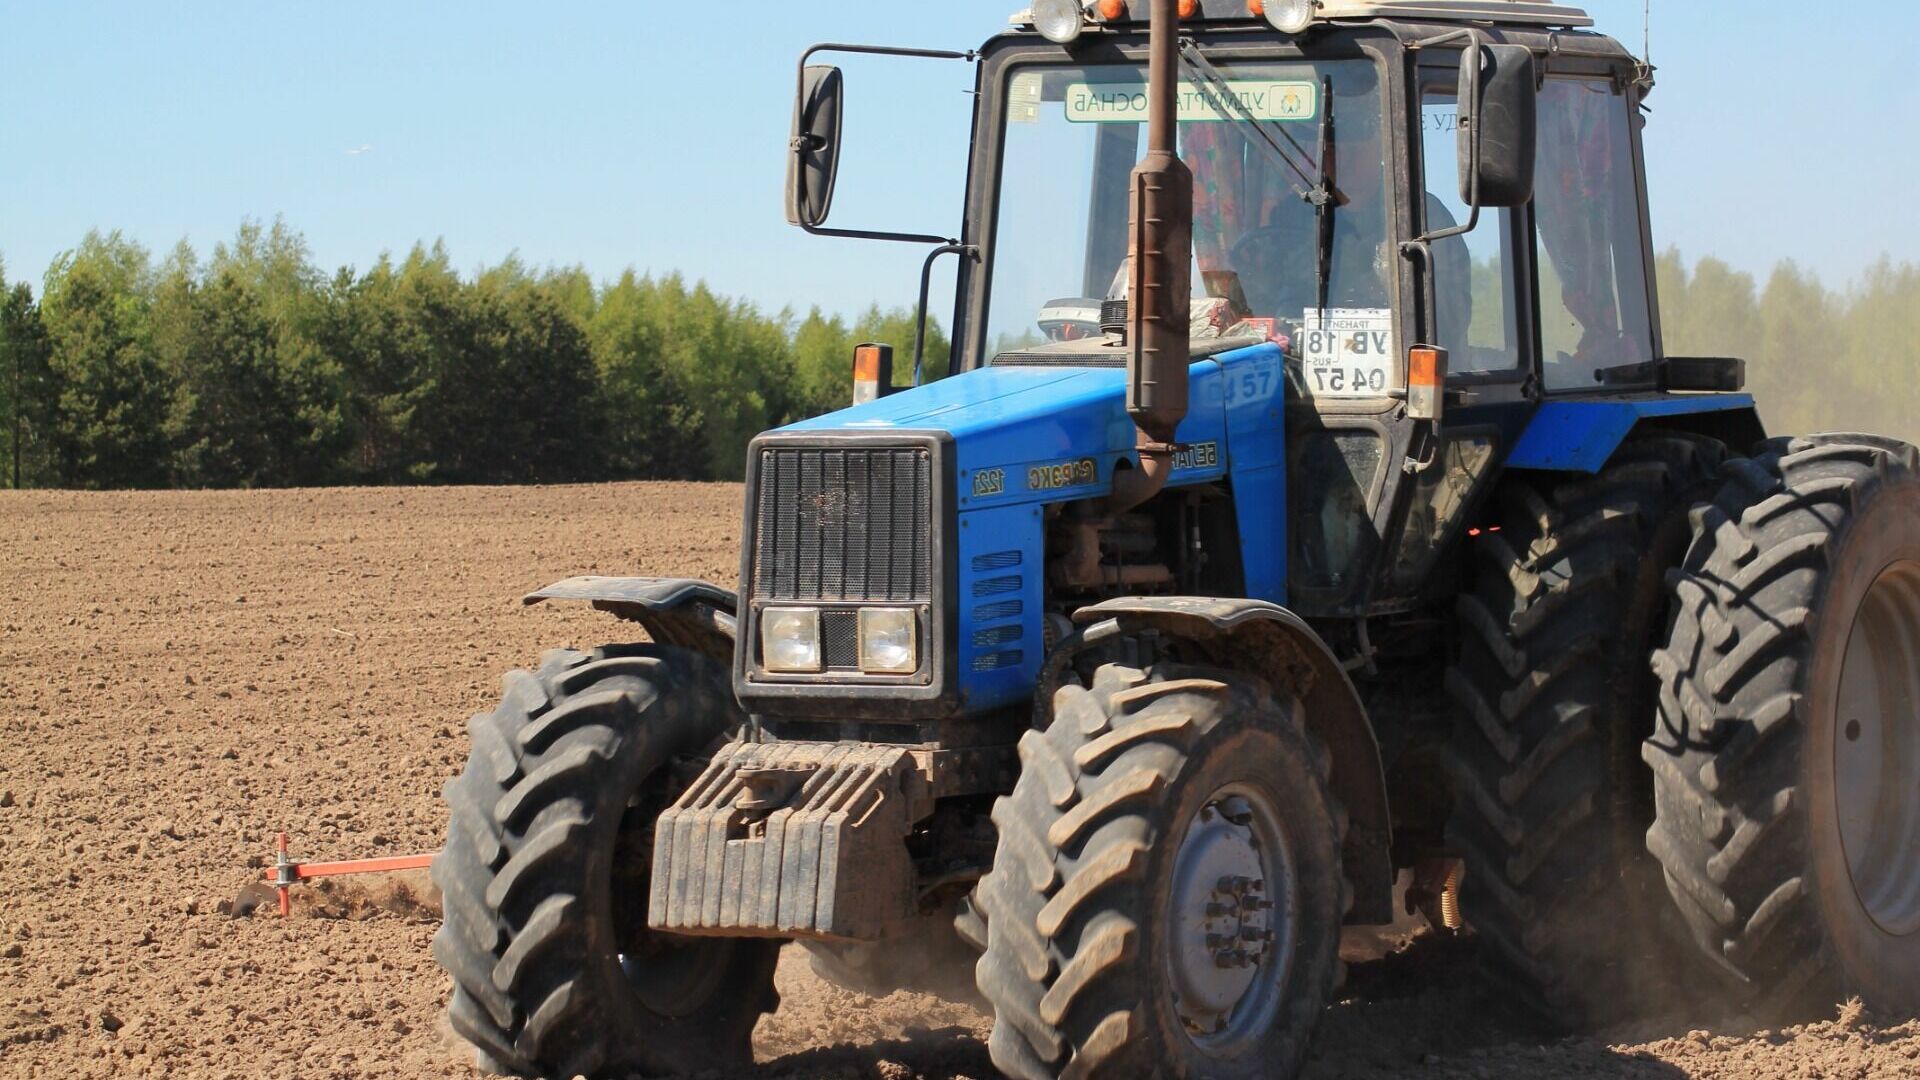 В Удмуртии завершено расследование гибели заведующей фермой под колесами трактора